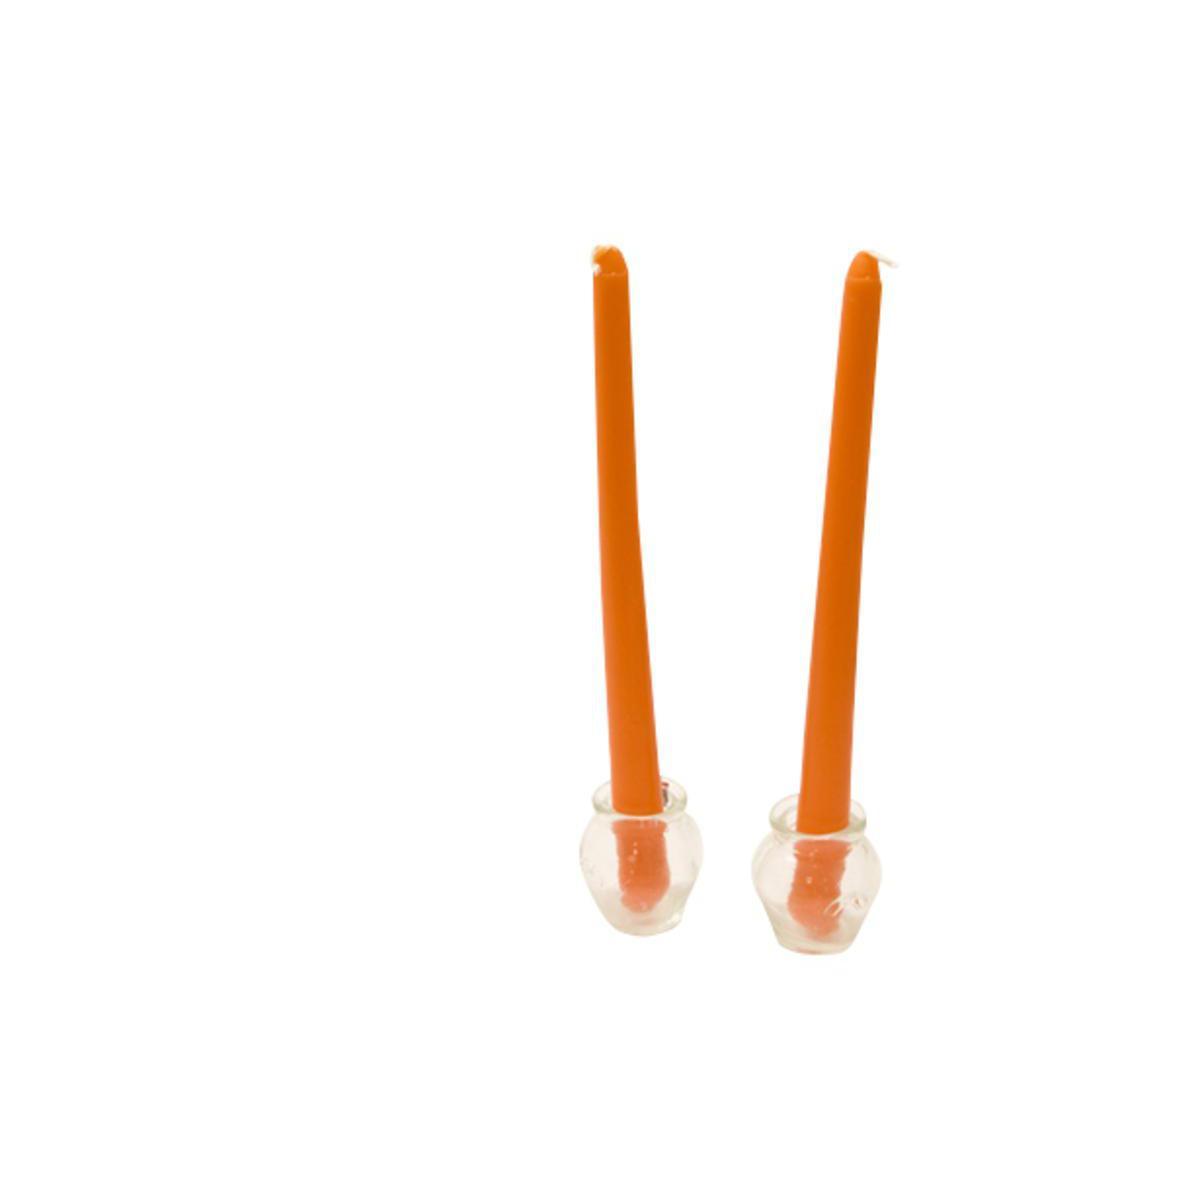 2 bougies à diner - Hauteur 25 cm - Orange